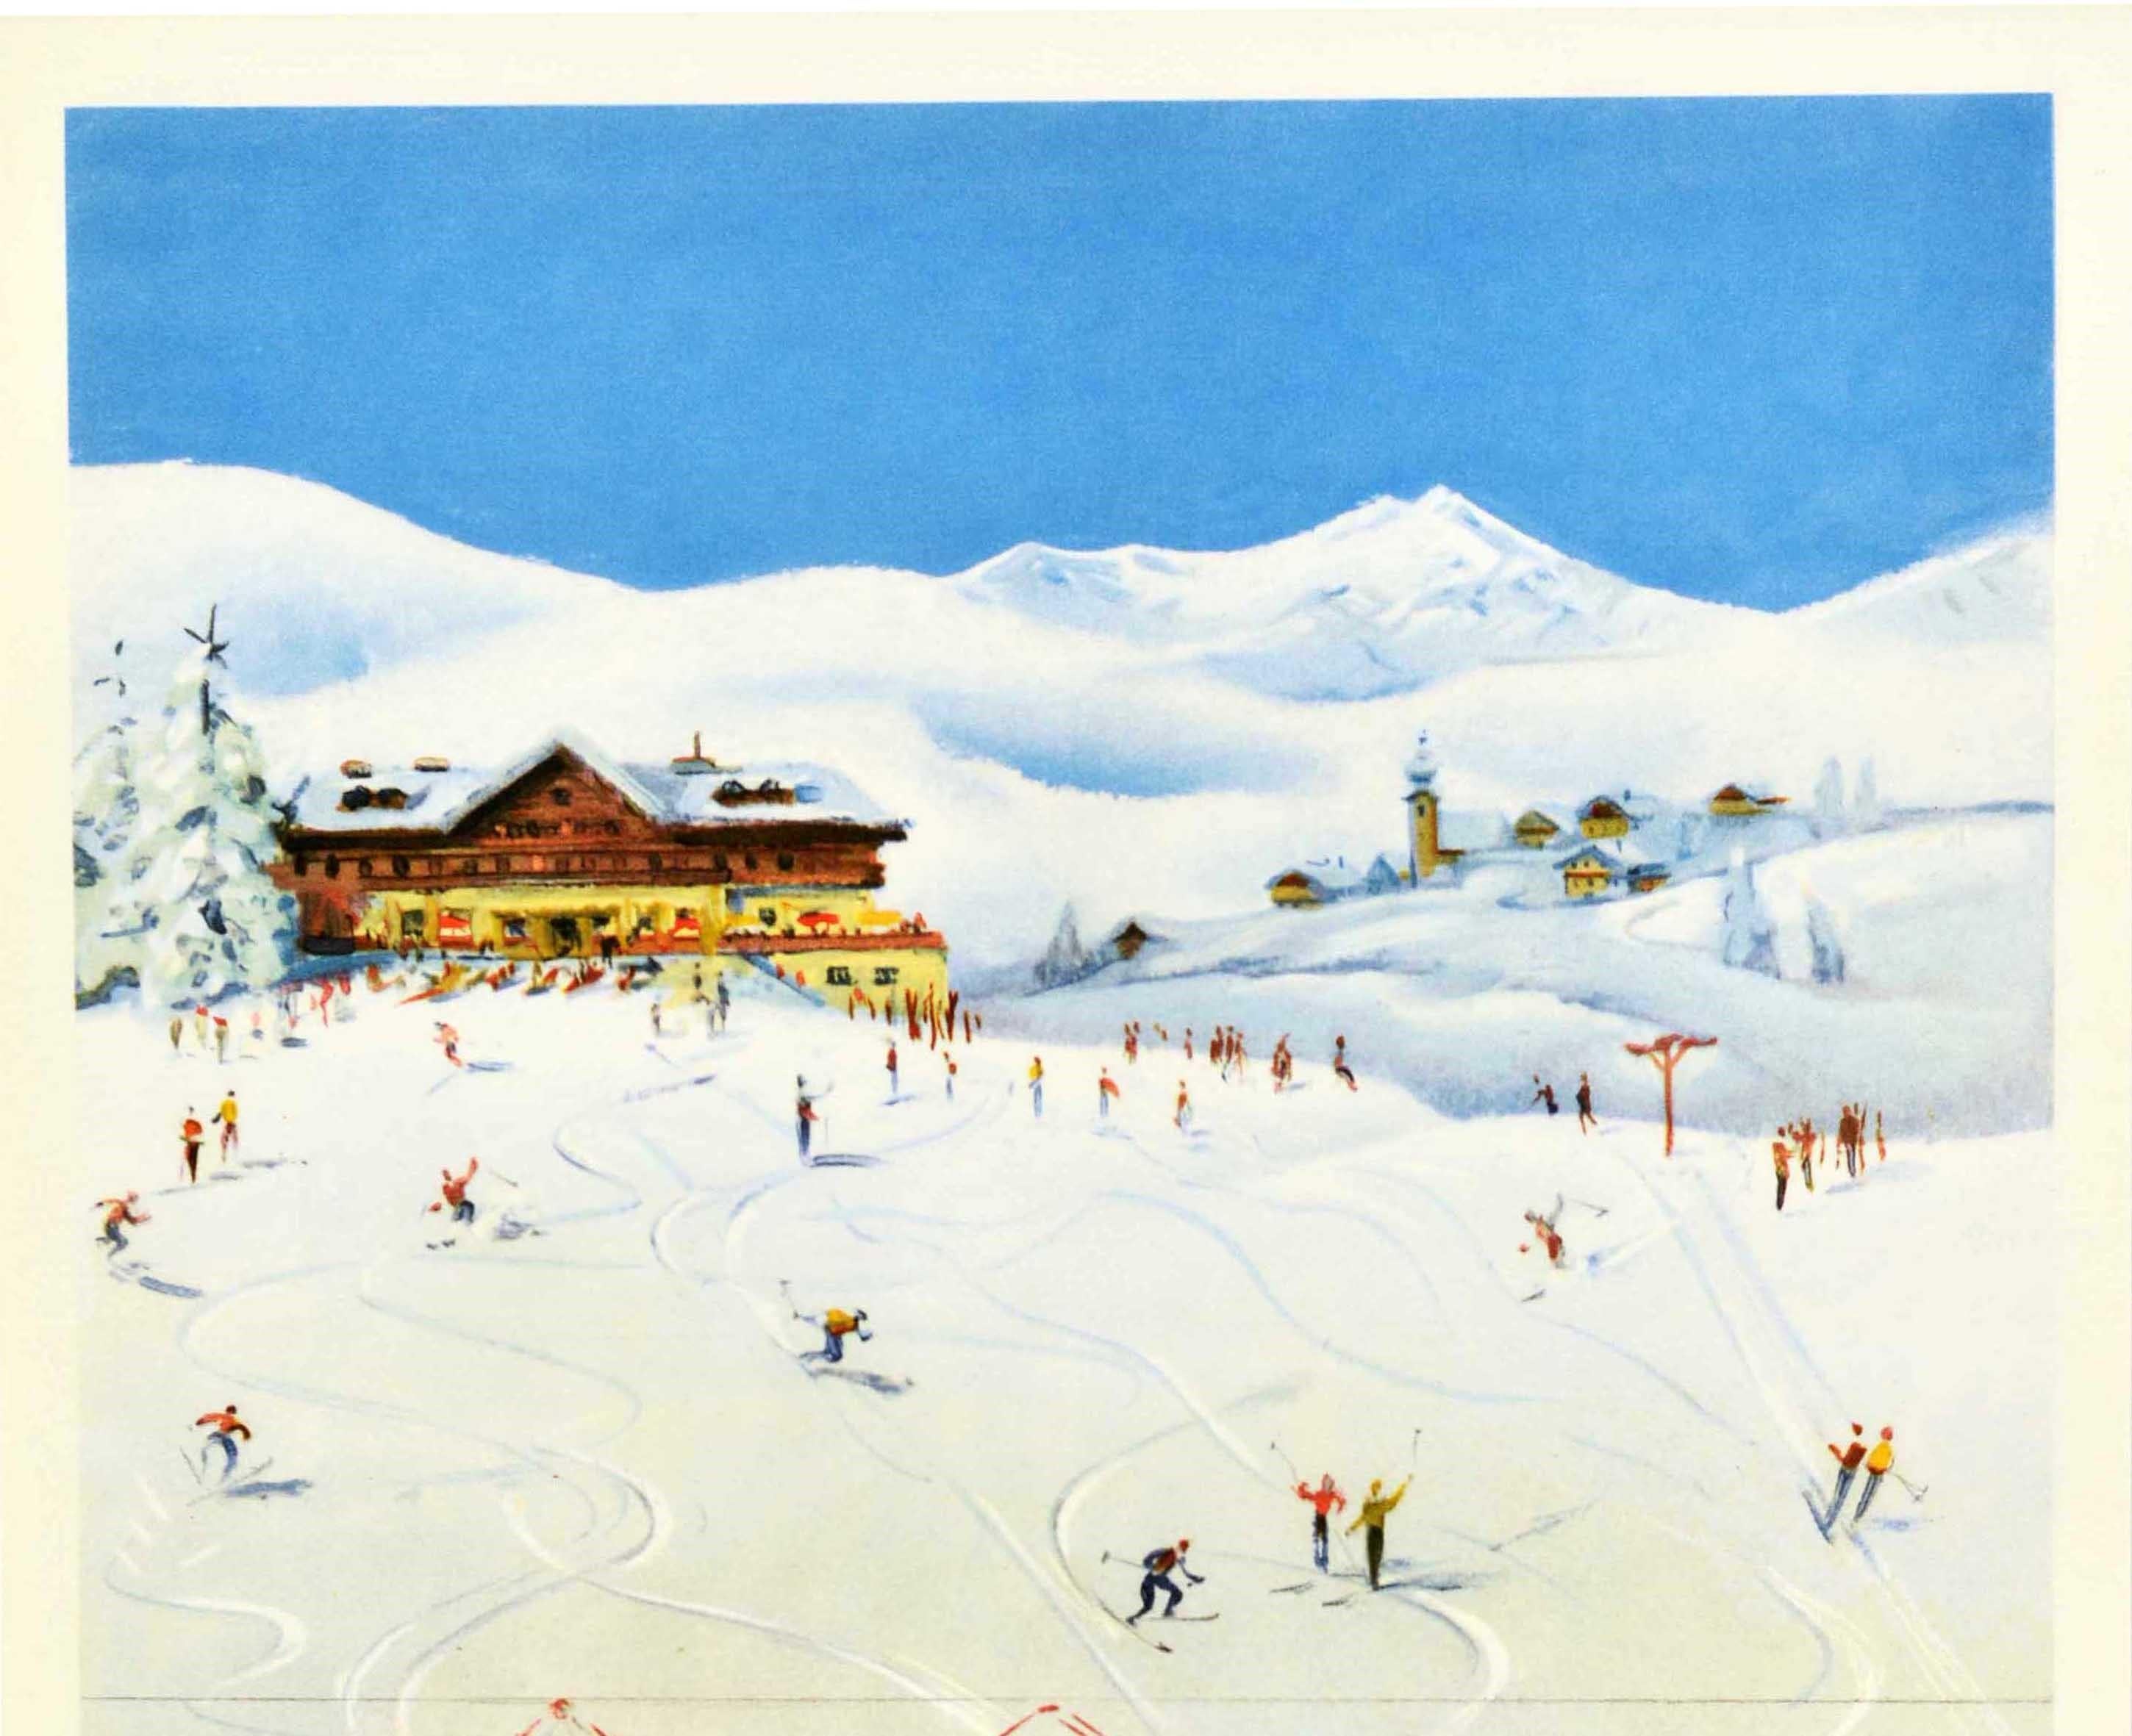 Original Vintage Wintersport- und Skireiseplakat - Autriche OBB Chemins de Fer Federaux Autrichiens / Austria OBB Österreichische Bundesbahnen - mit Skifahrern auf einem verschneiten Hügel, die abfahren und einen Schlepplift auf der Seite vor einem